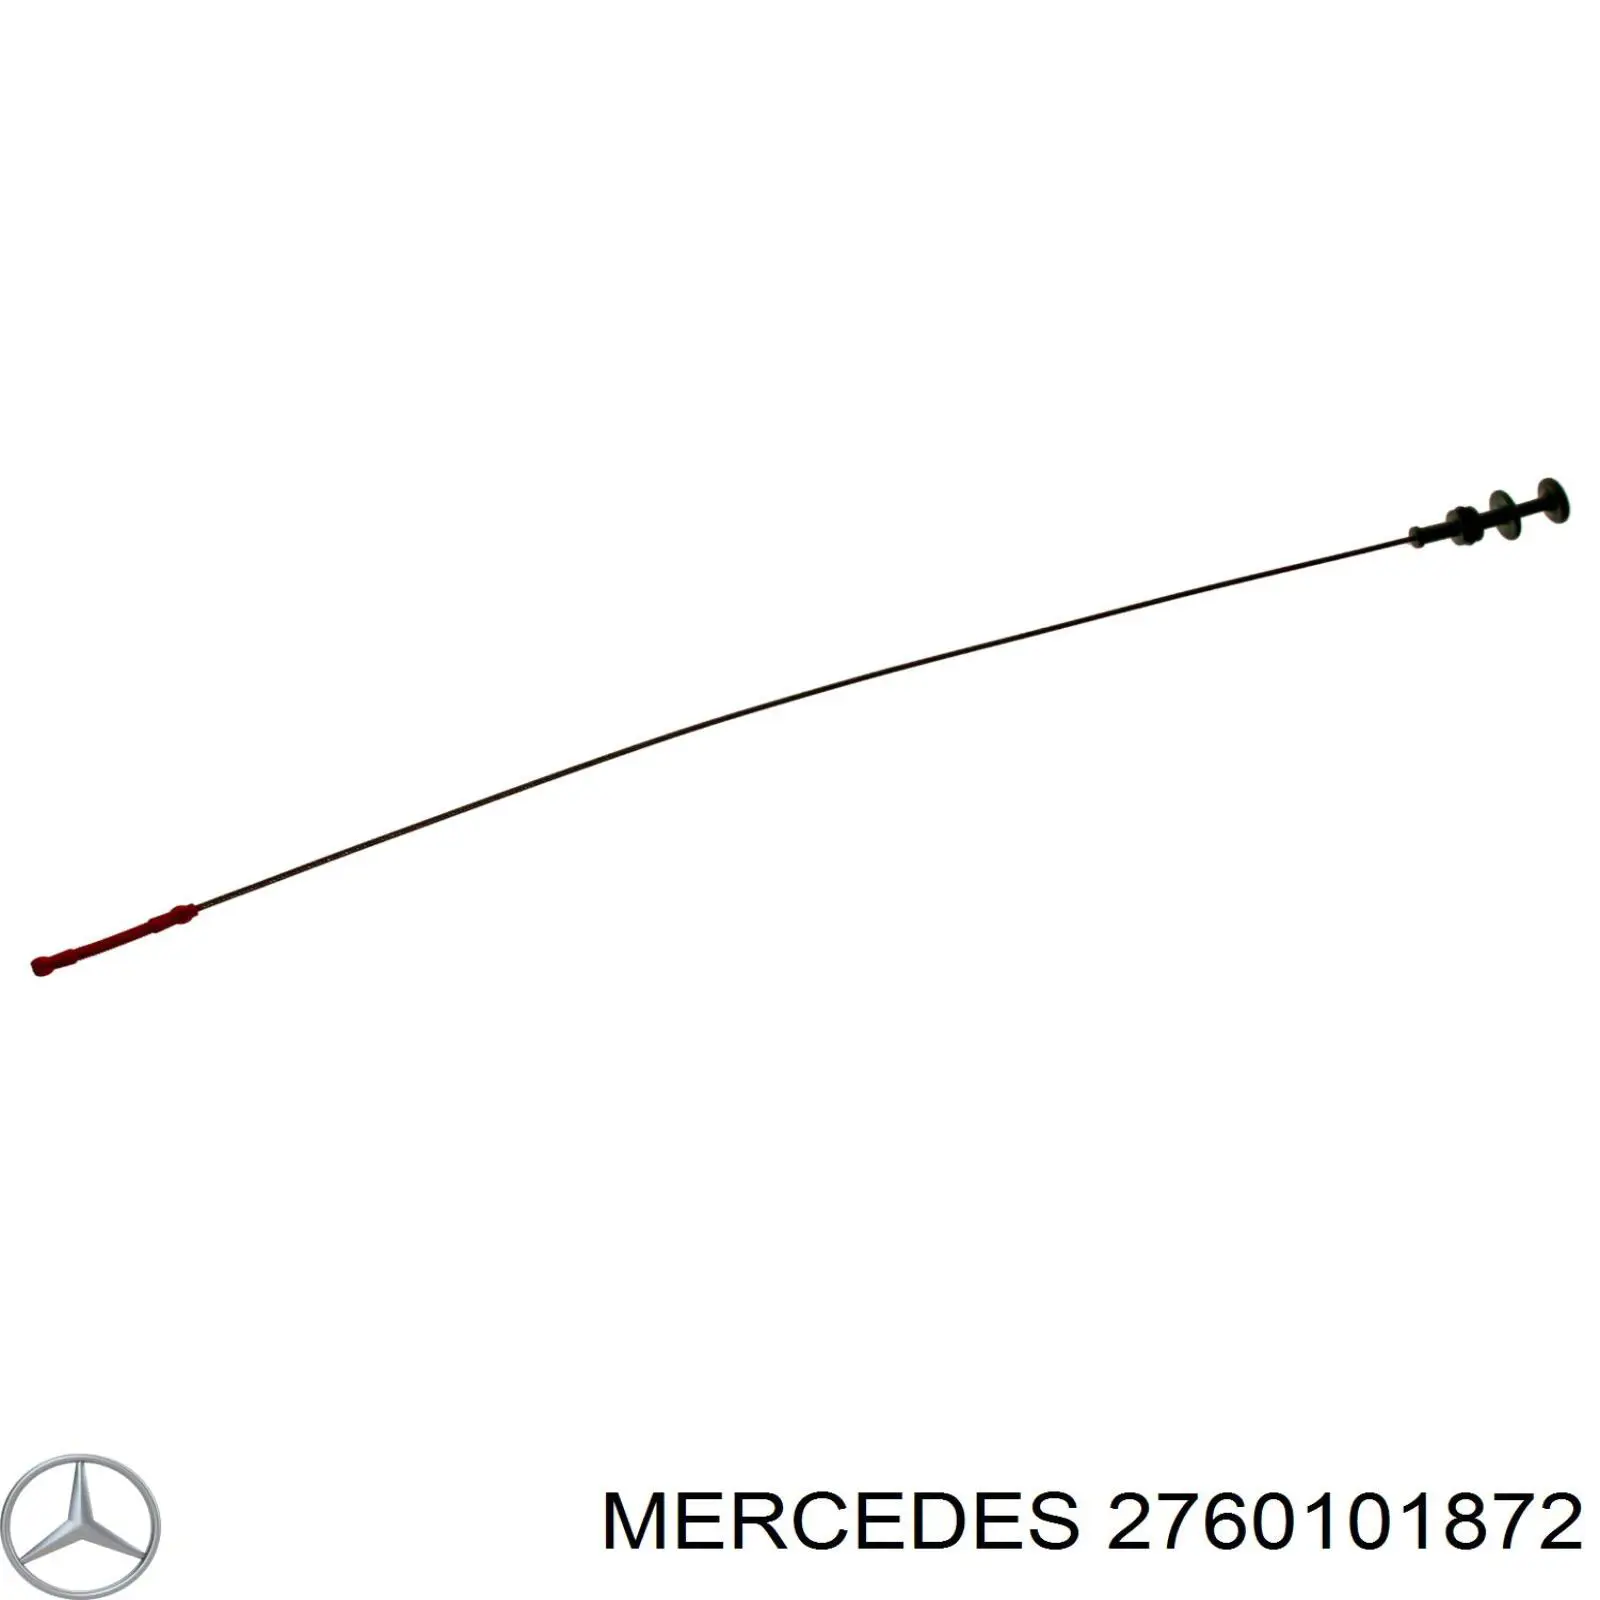 2760101872 Mercedes щуп-індикатор рівня масла в двигуні